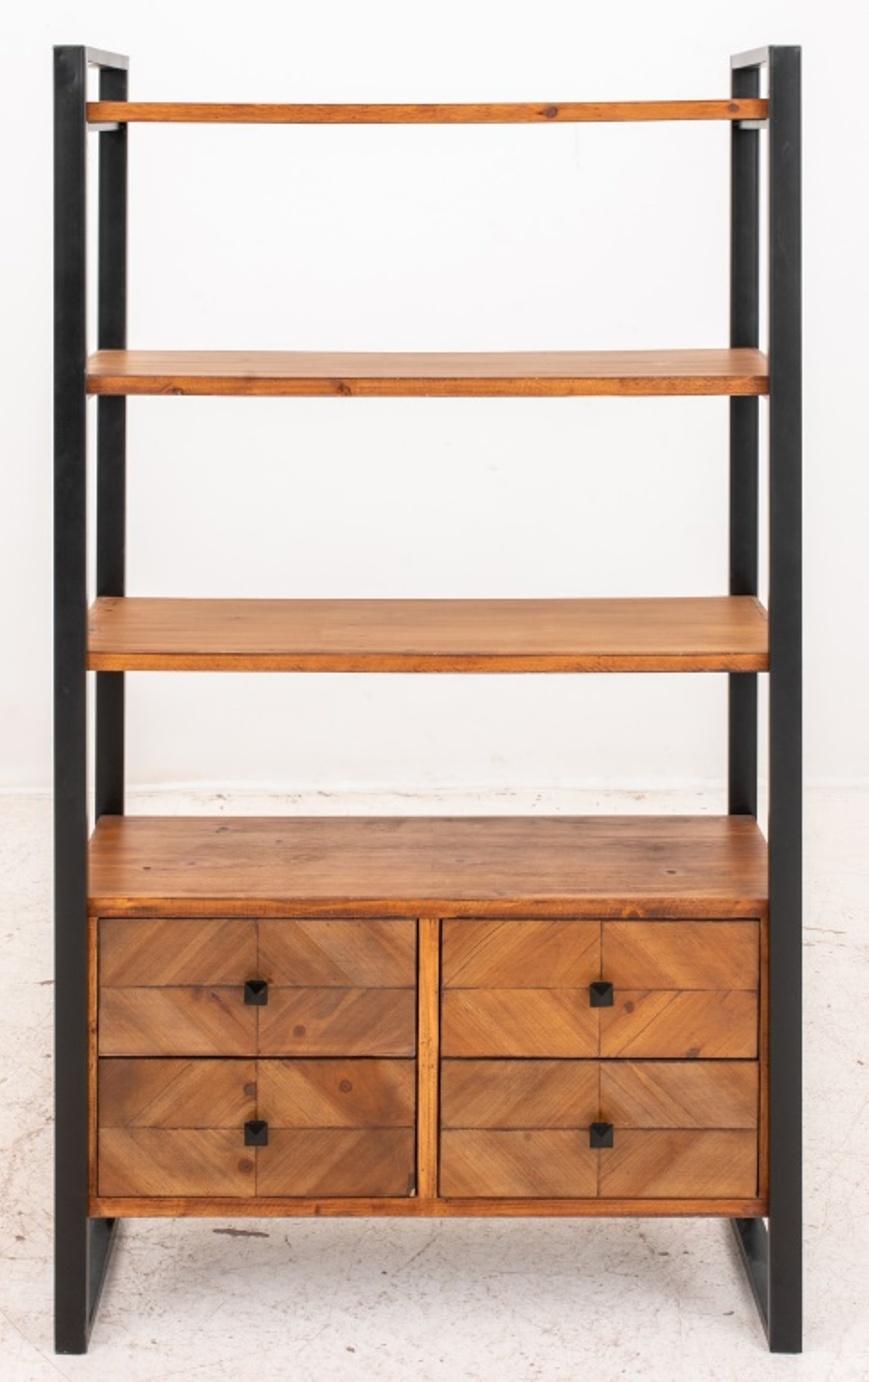 Bibliothèque de style loft industriel avec cadre en métal ébonisé et étagères en bois sur quatre tiroirs.

Dimensions : 63,5